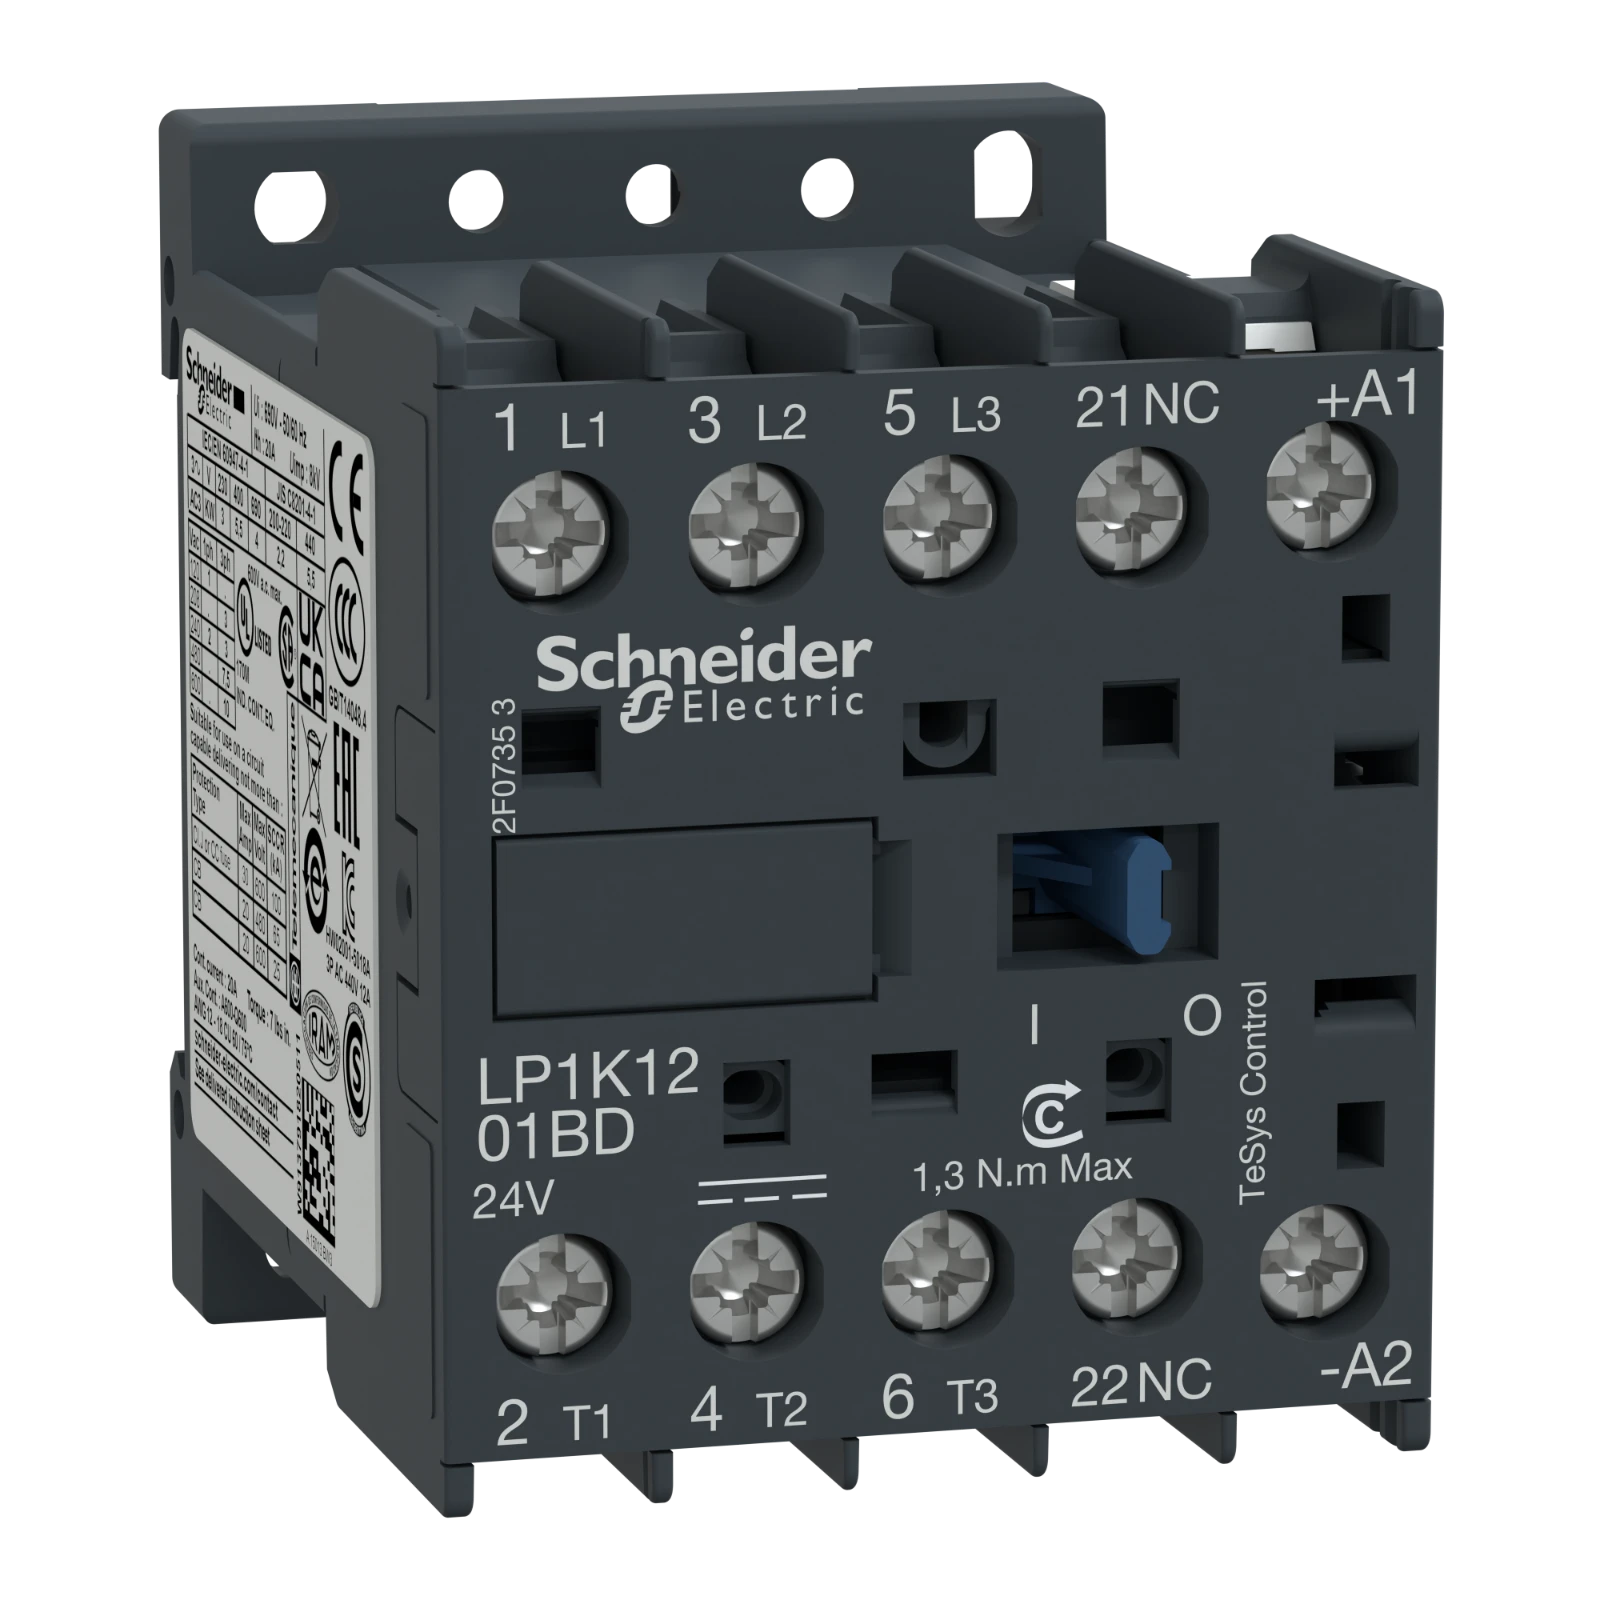 1042841 - Schneider Electric LP1K1201BD